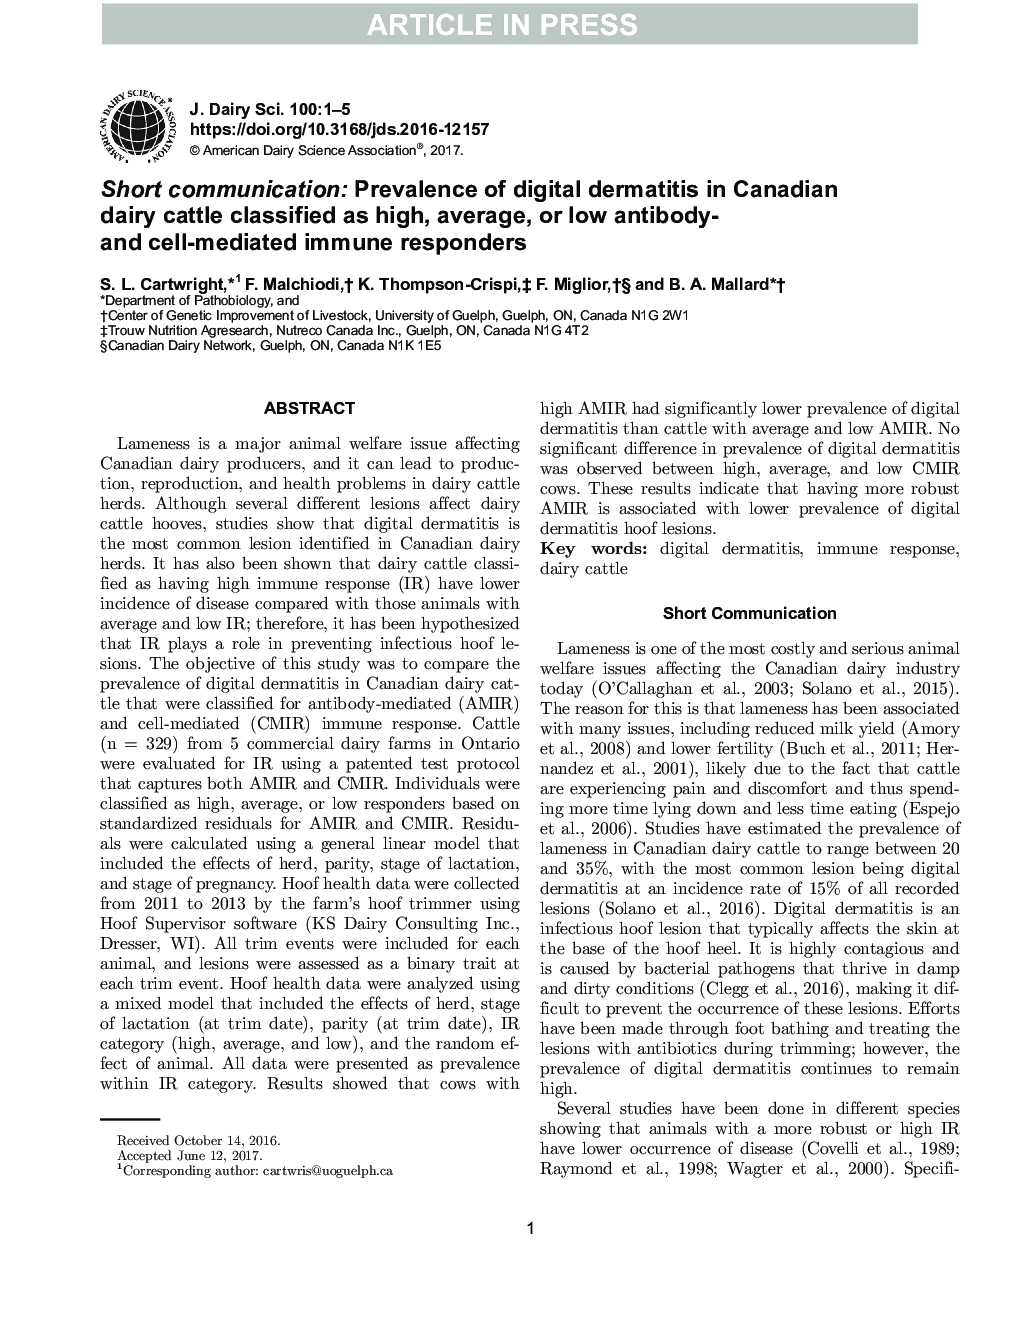 ارتباط کوتاه: شیوع درماتیت دیجیتالی در گاوهای شیری کانادا که به عنوان پاسخ دهنده های ایمنی با آنتیبادی های بالا، متوسط ​​یا پایین شناخته می شوند 